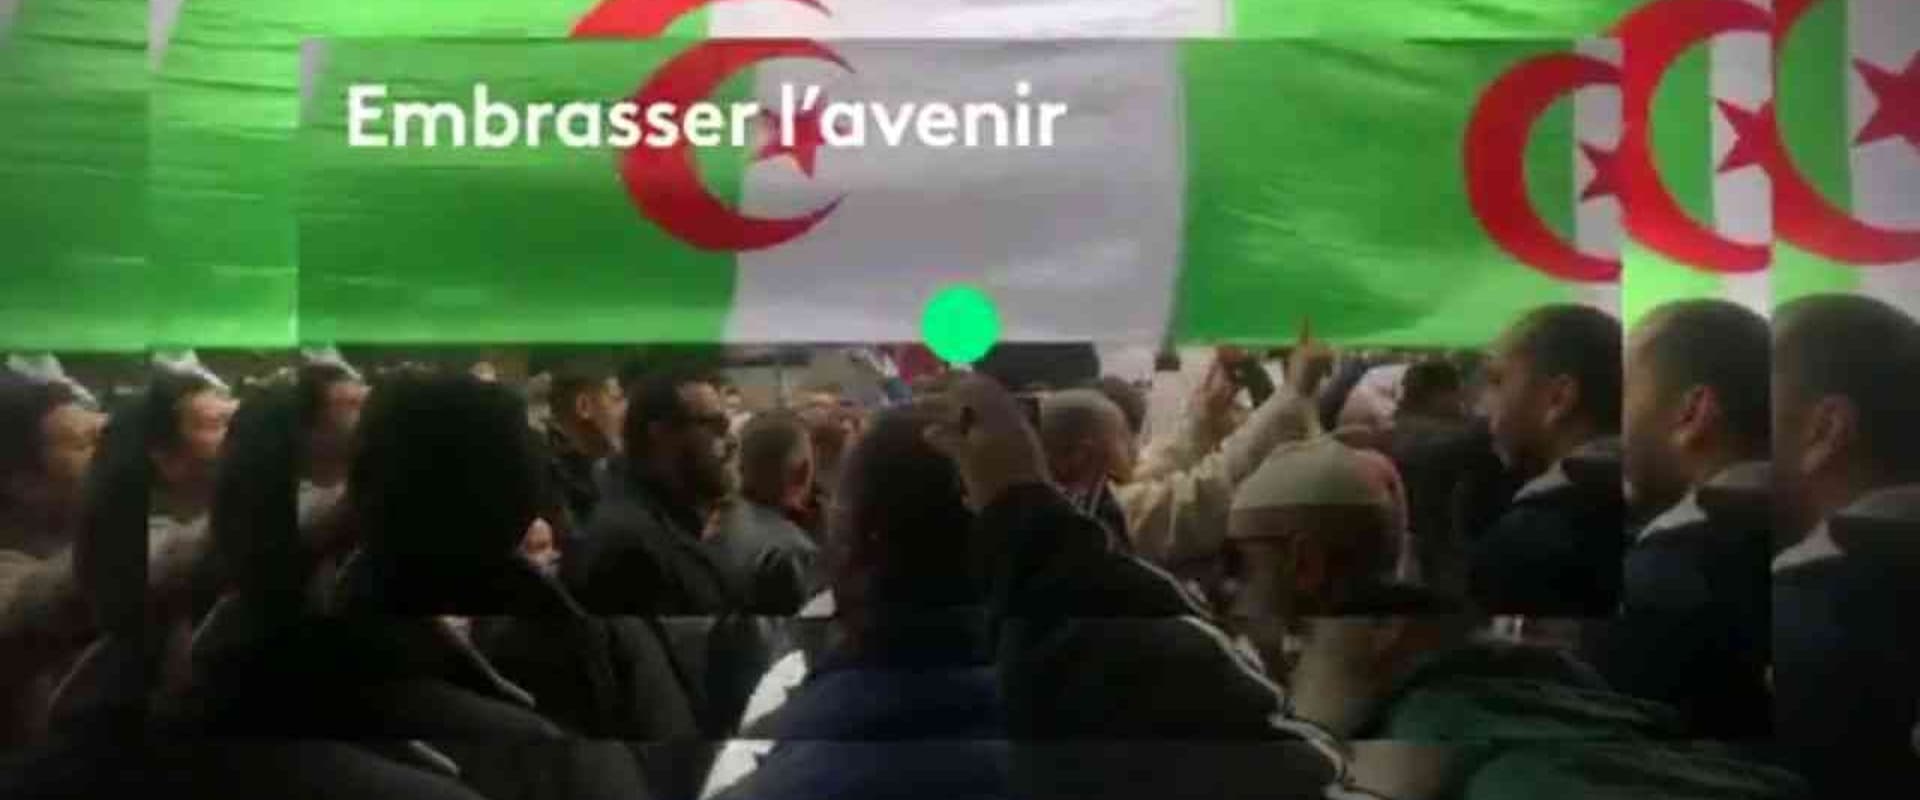 Algérie, mon amour